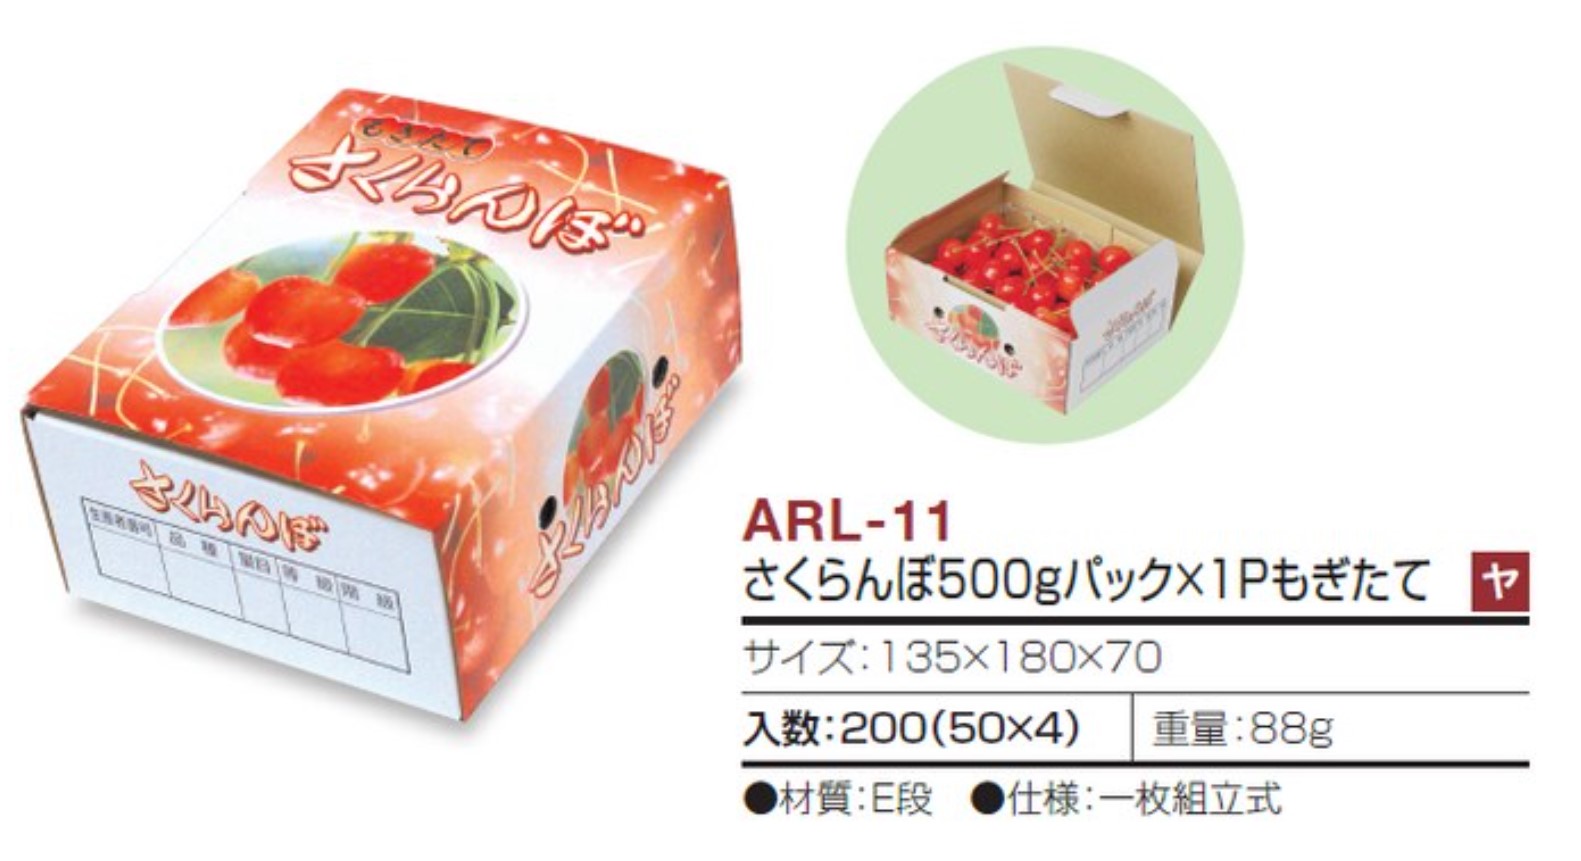 さくらんぼ/アメリカンチェリー容器特集 | 野菜・フルーツパッケージと